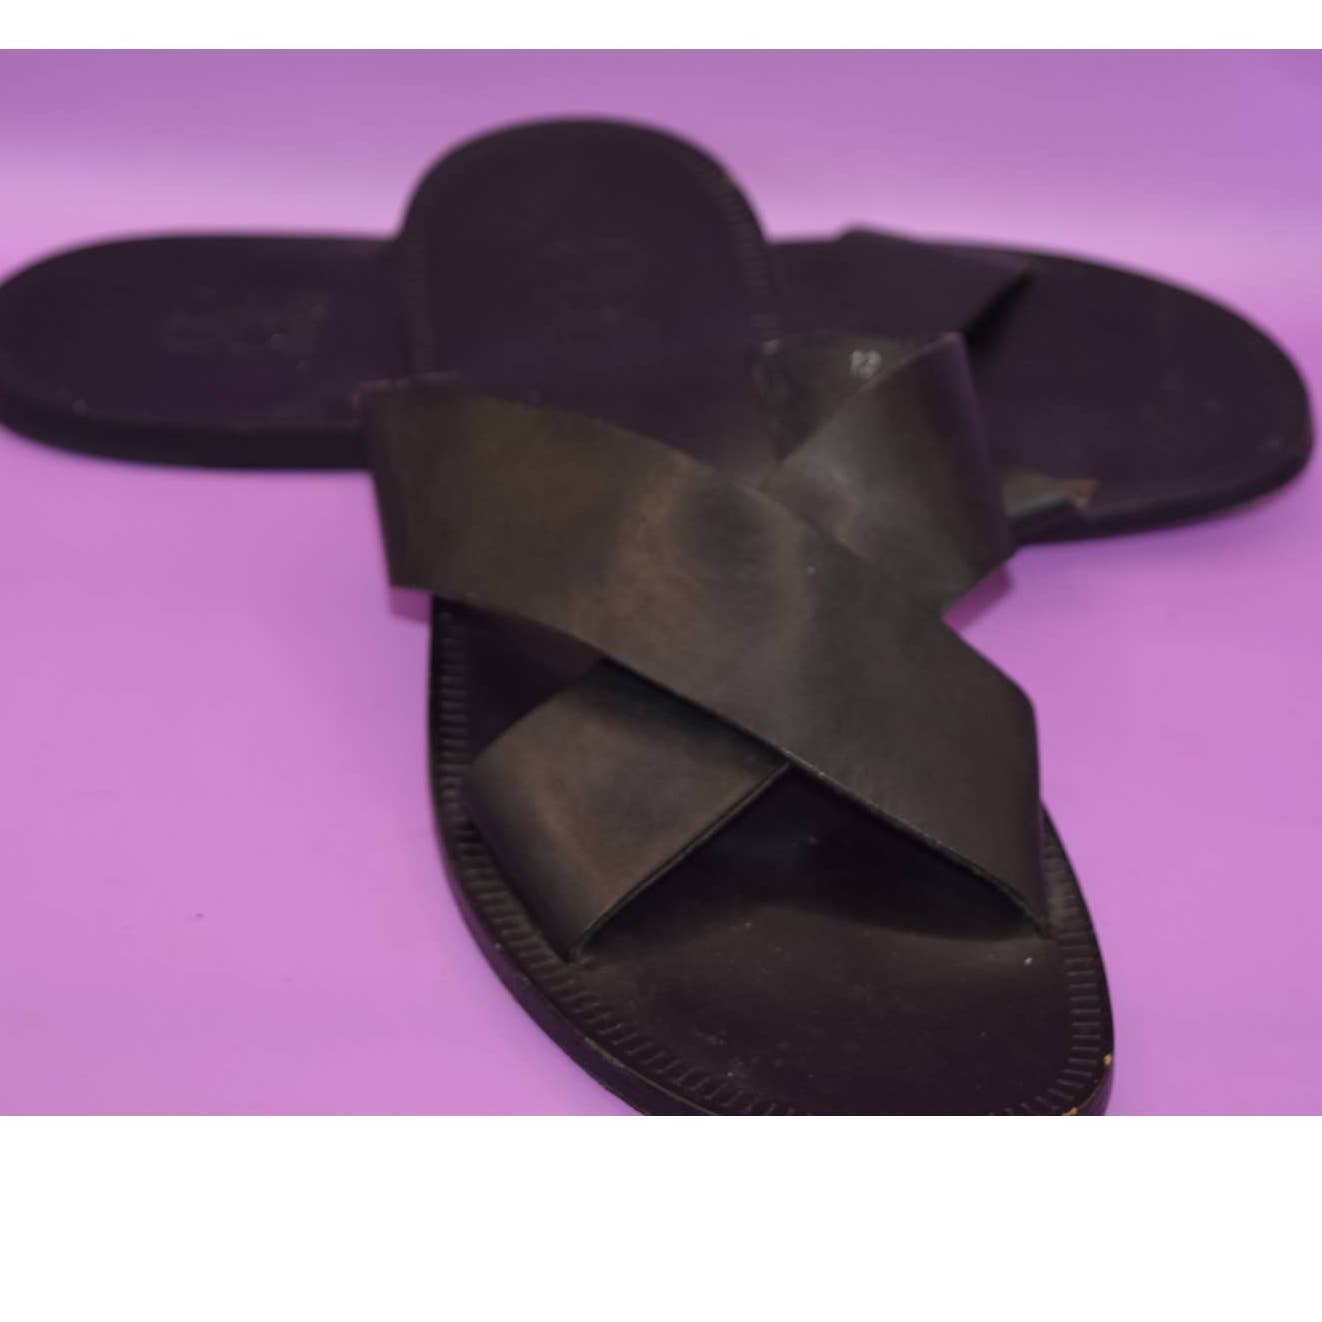 Barney's New York Co-Op Black Leather Sandals Slides - 12